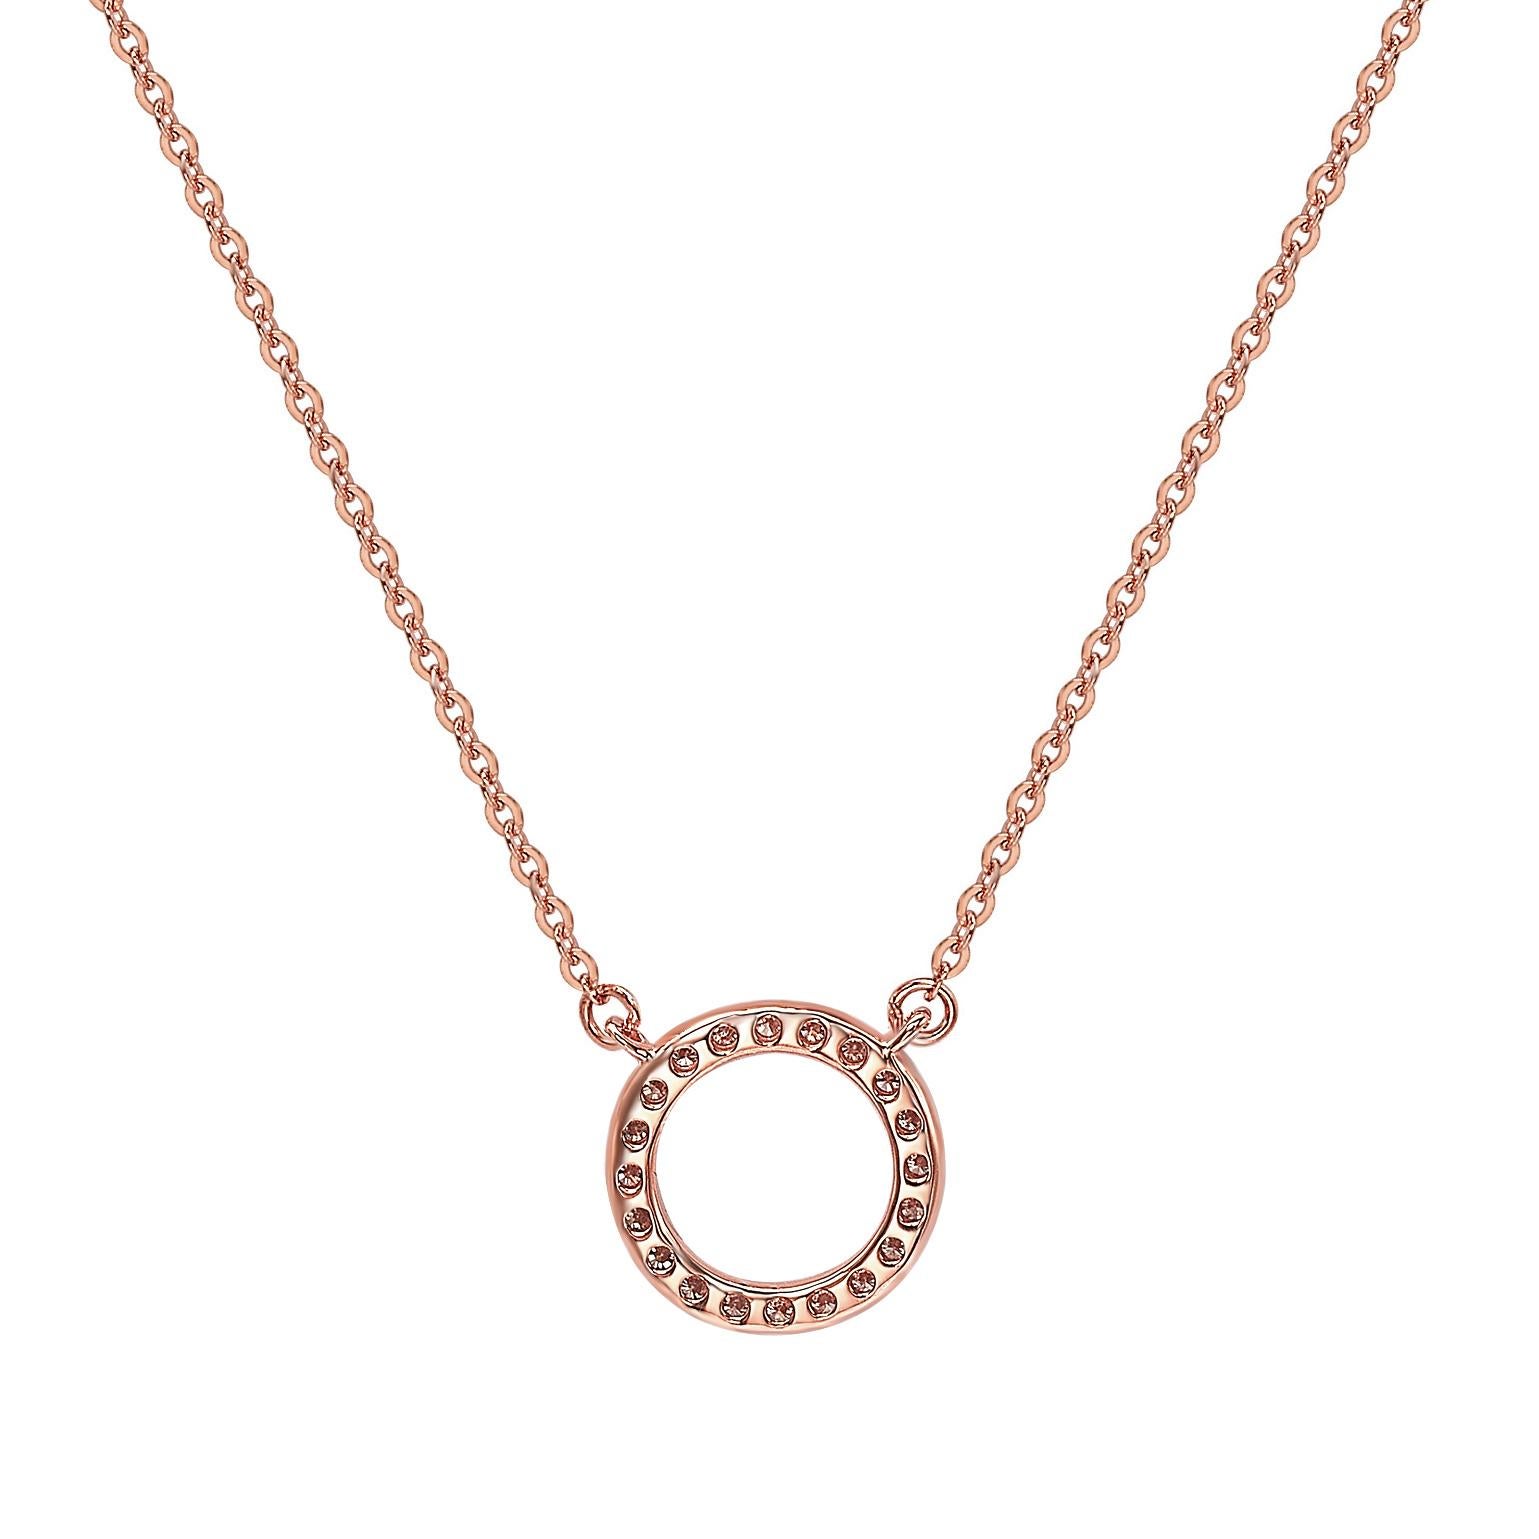 Dieses atemberaubende kreisförmige Collier von Suzy Levian besteht aus natürlichen Diamanten, die von Hand in 14-karätiges Roségold gefasst wurden. Es ist das perfekte Geschenk, um jemandem mitzuteilen, dass man an ihn oder sie denkt. Jede